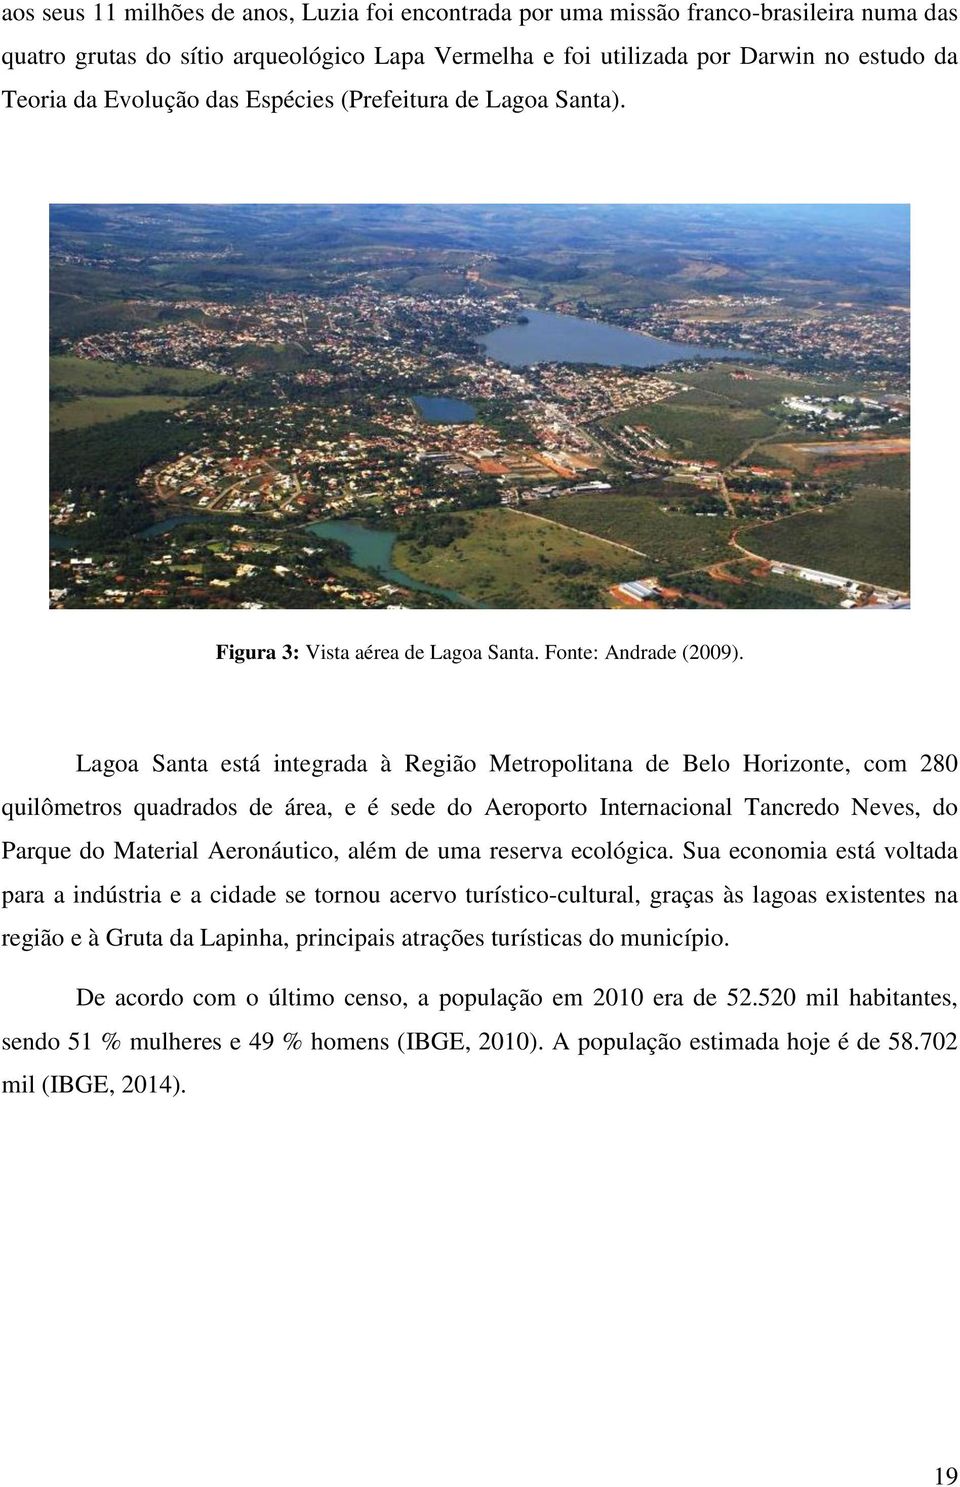 Lagoa Santa está integrada à Região Metropolitana de Belo Horizonte, com 280 quilômetros quadrados de área, e é sede do Aeroporto Internacional Tancredo Neves, do Parque do Material Aeronáutico, além